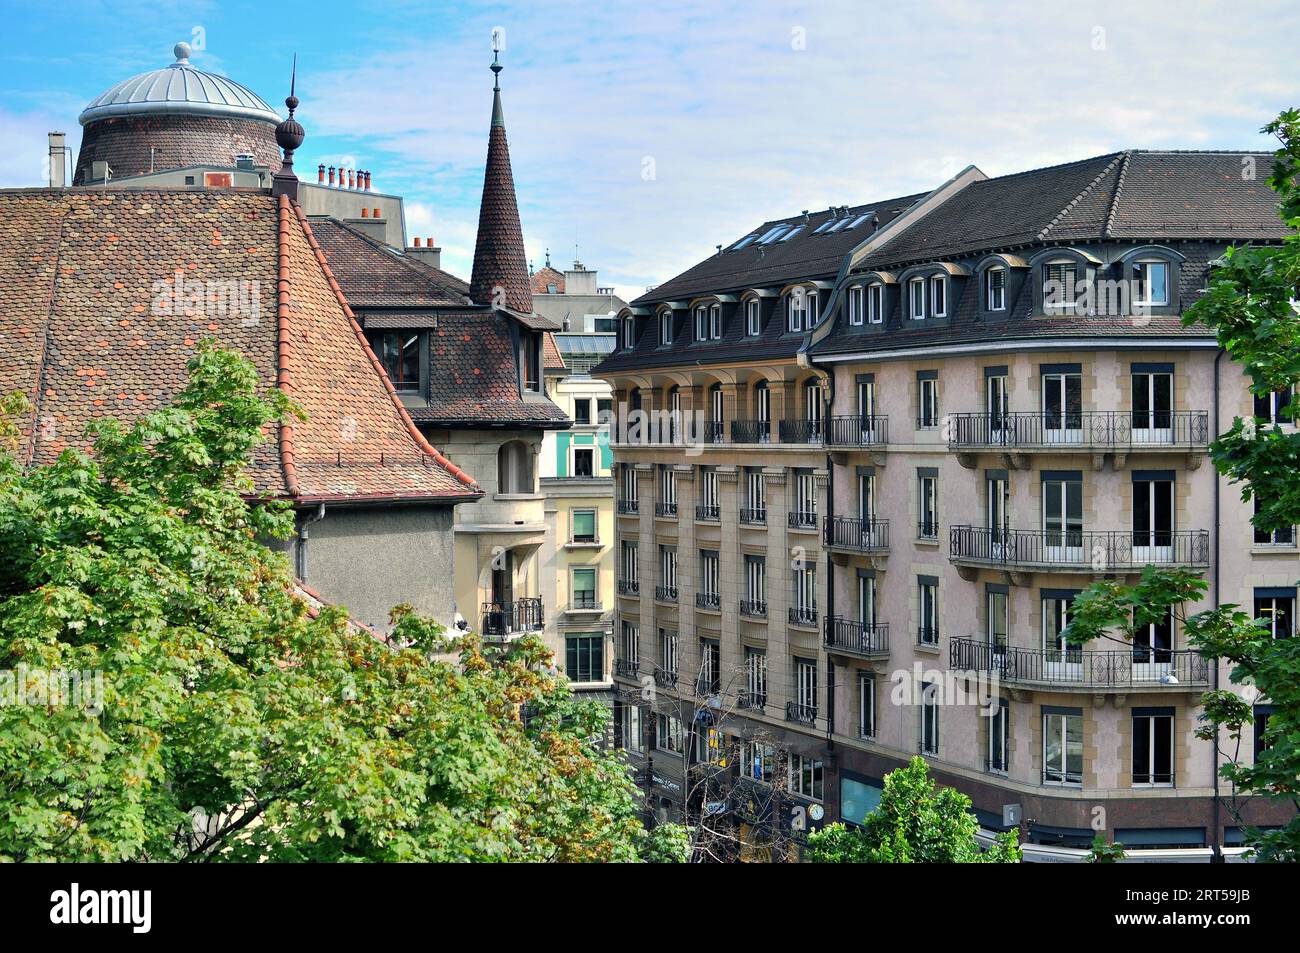 GINEVRA, SVIZZERA - 17 AGOSTO: Vista degli edifici nel centro di Ginevra il 17 agosto 2015. Ginevra è la seconda città più grande della Svizzera. Foto Stock